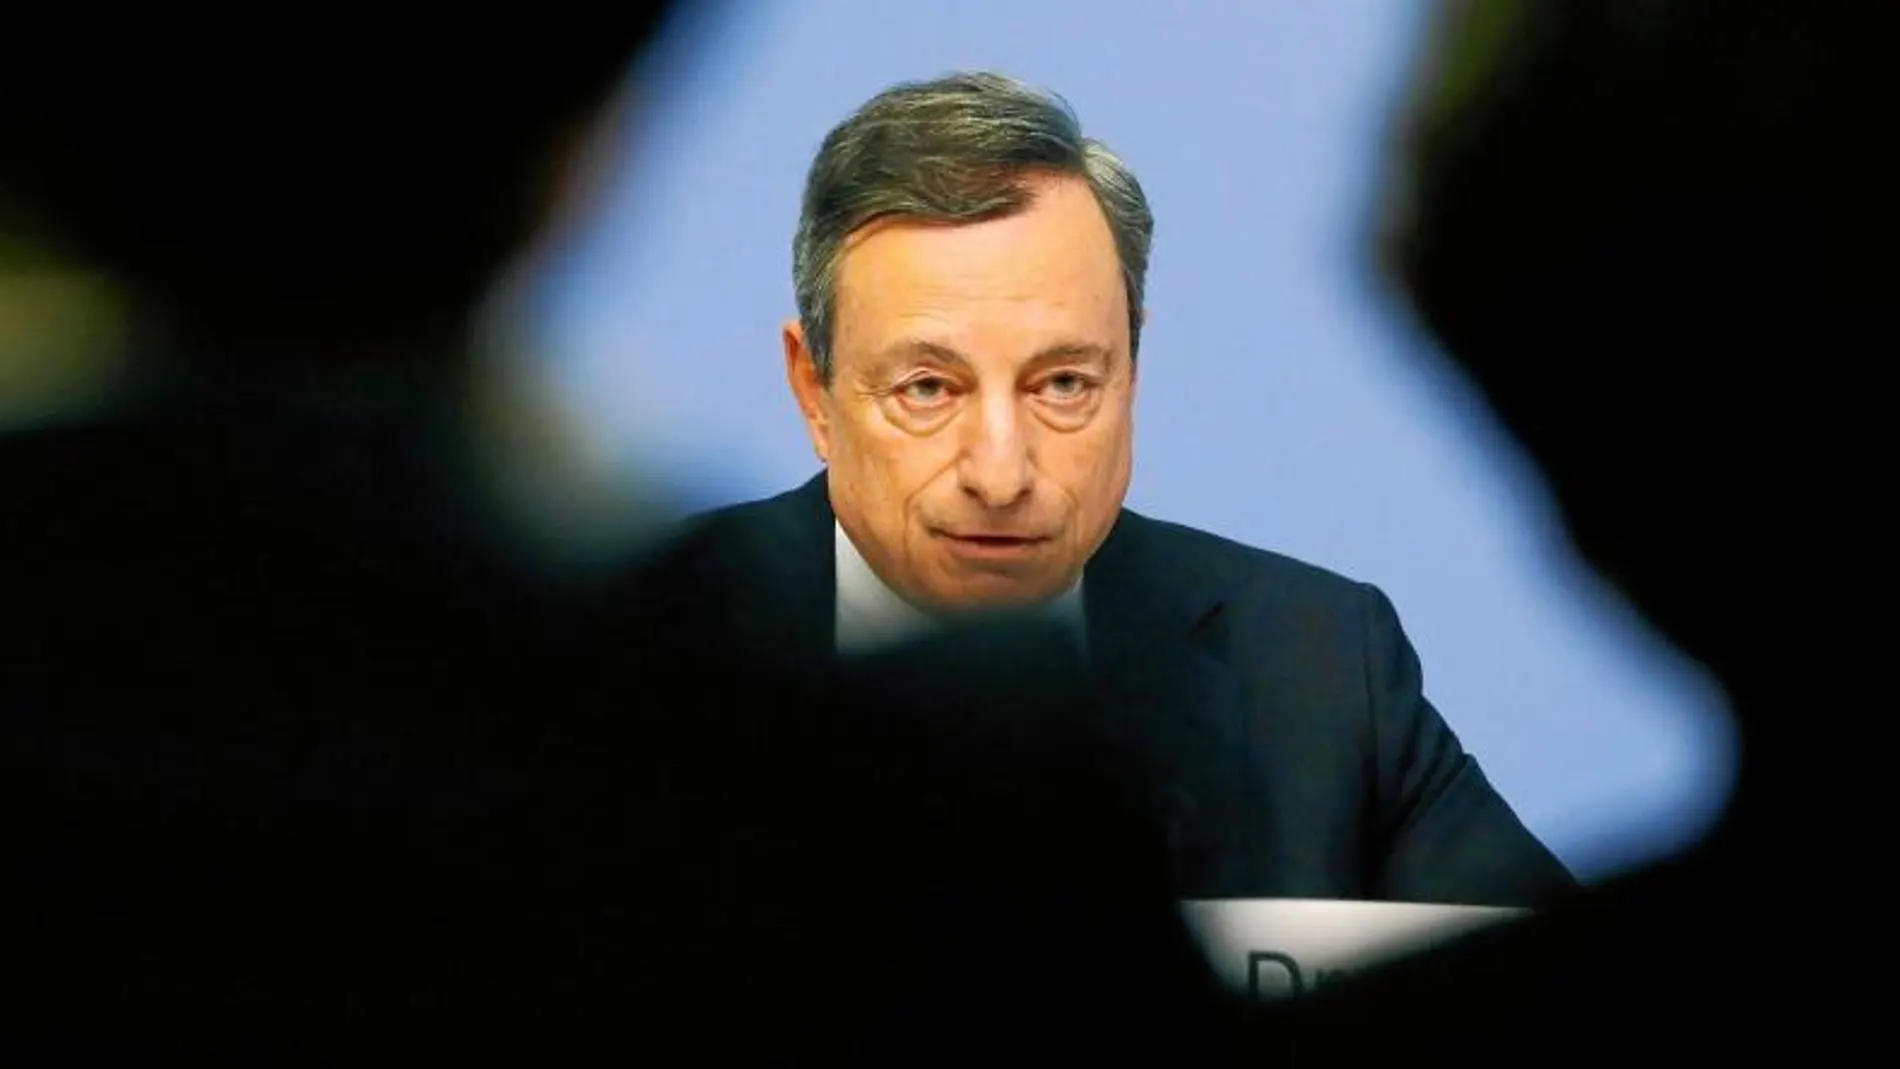 La política de tipos bajos de Mario Draghi ha restado atractivo a los depósitos bancarios a plazo